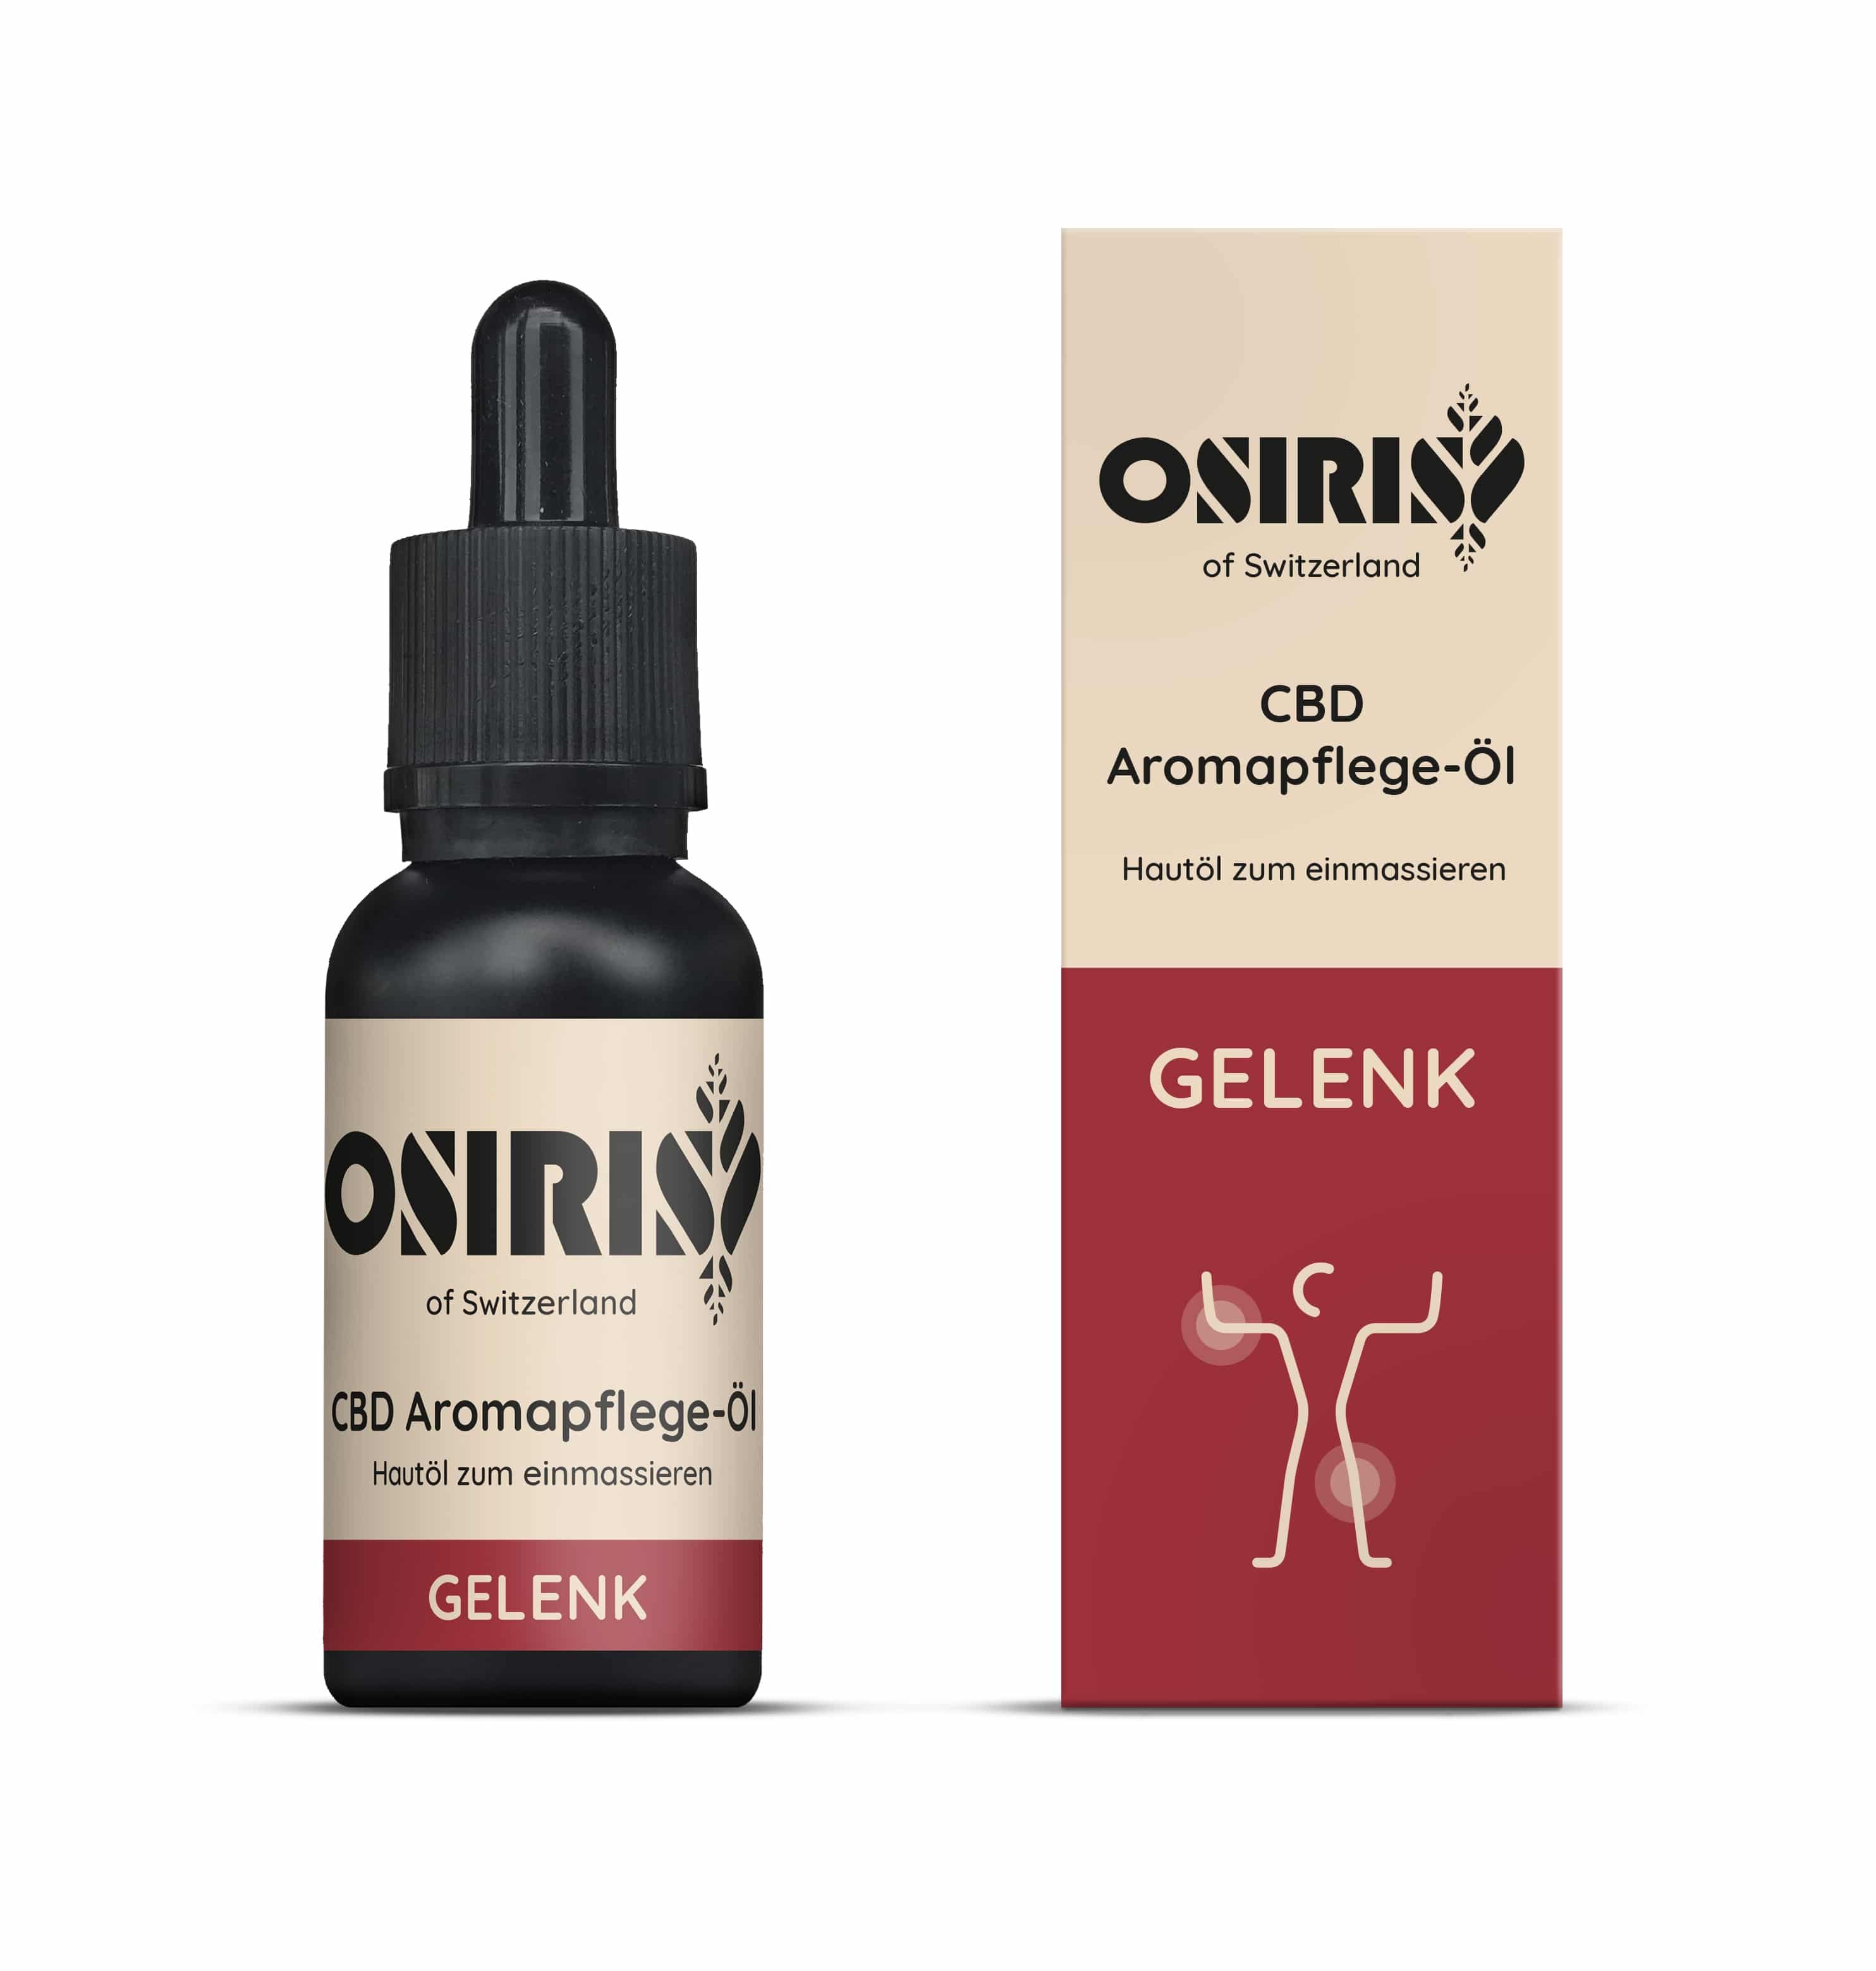 Image of Osiris Gelenkwohl - Aromapflege mit Bio Johanniskraut- und Arnika-Öl bei CBD-Balance.ch